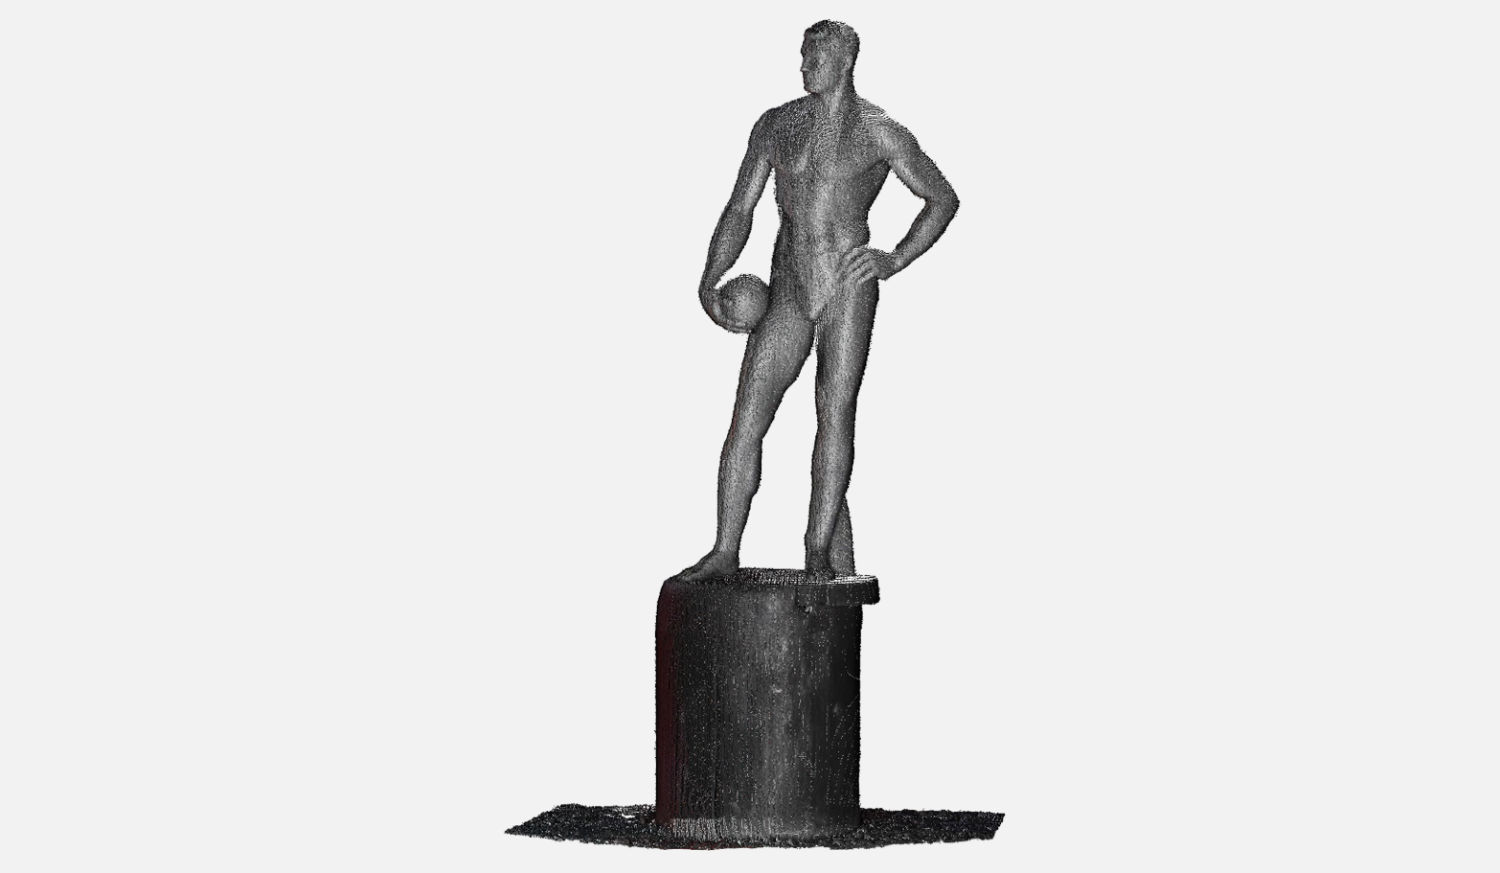 Отсканированный памятник - фигура футболиста